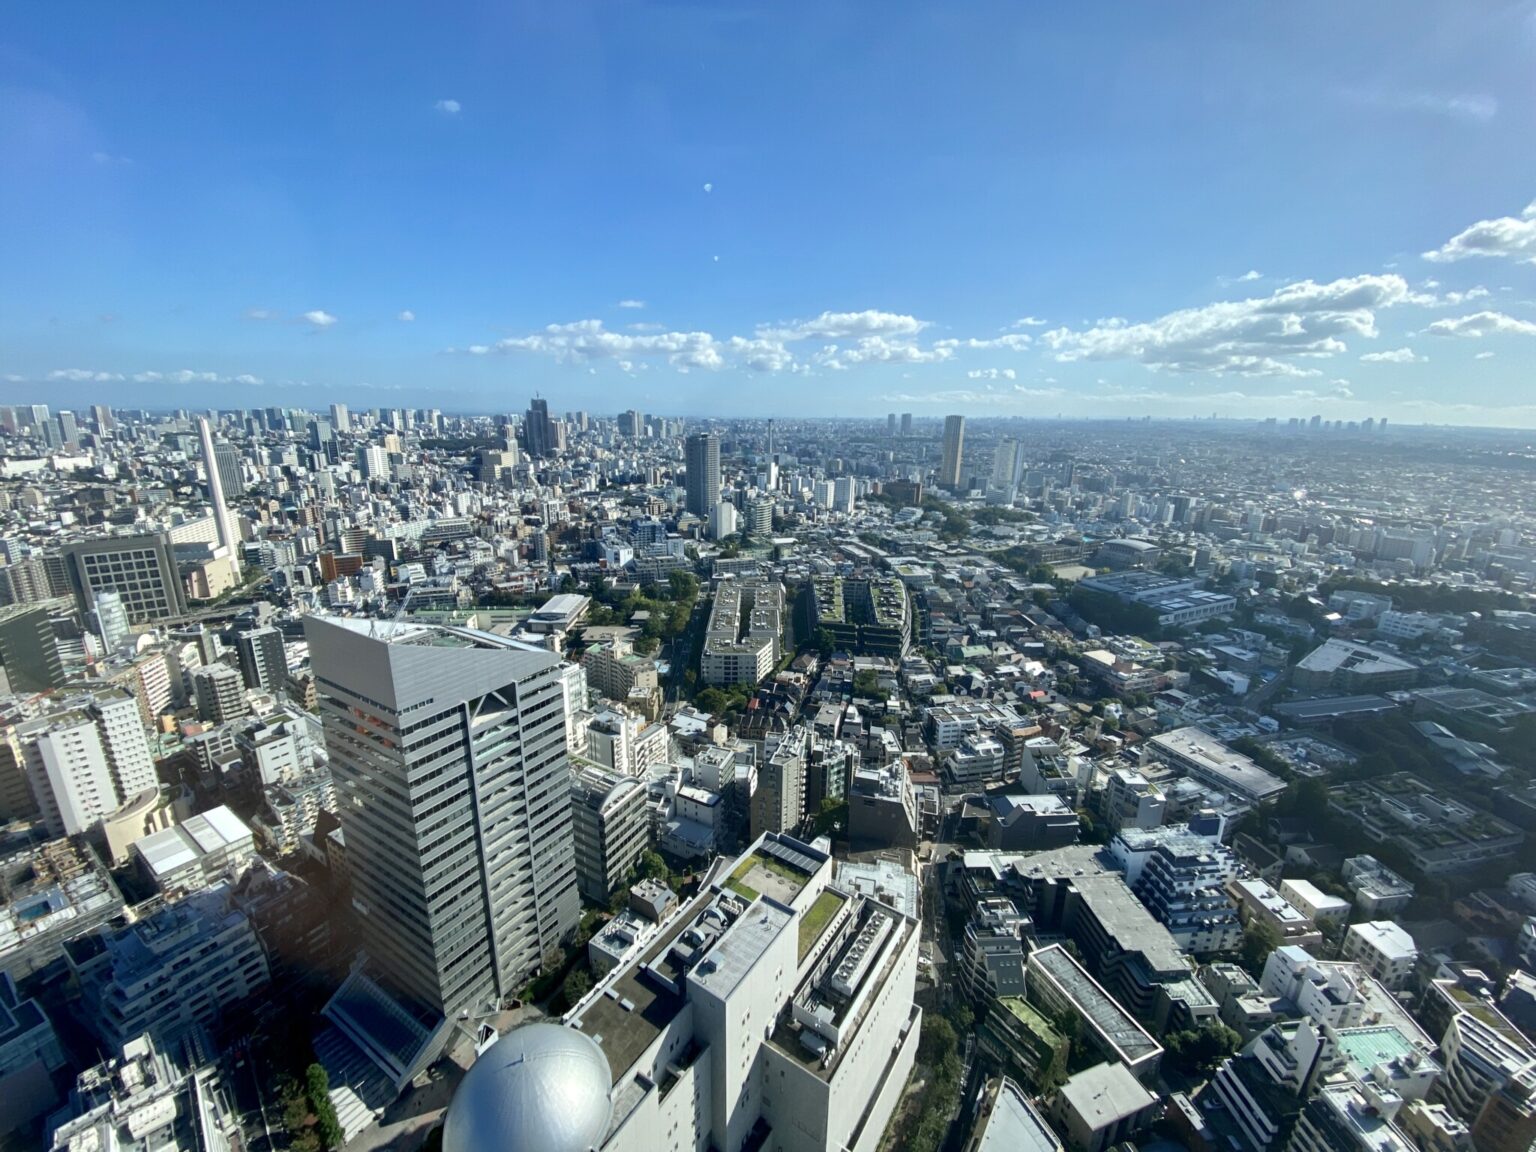 イベントが開催された〈セルリアンタワー東急ホテル〉39階の披露宴会場からは、羽田、東京湾岸エリア、横浜のパノラミックな景色が広がっていました。